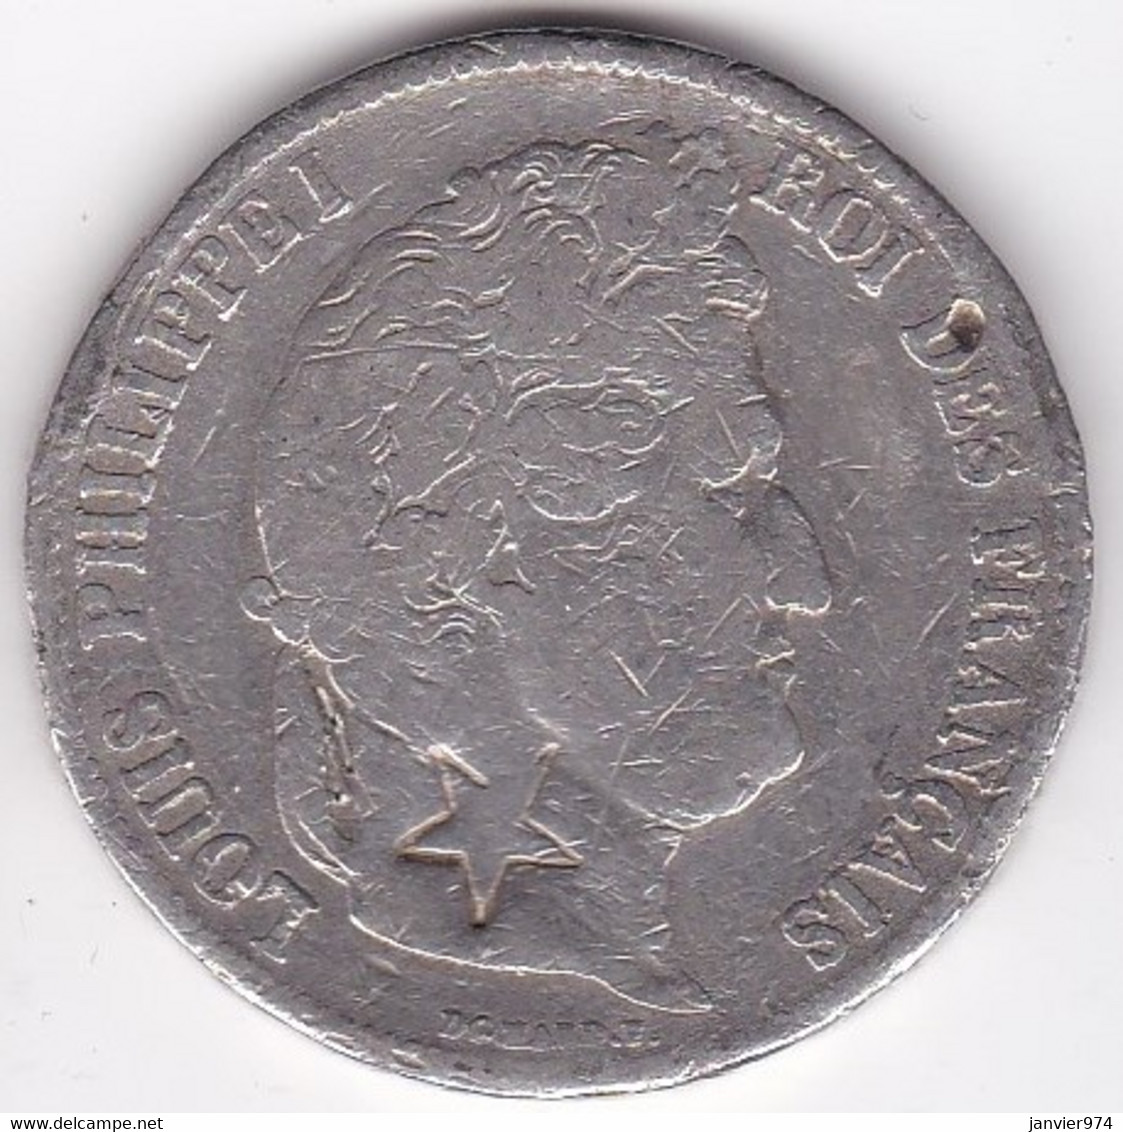 5 Francs 1837 W , Louis Philippe I, Avec Contremarque ETOILE à 5 Branches , En Argent. - 5 Francs